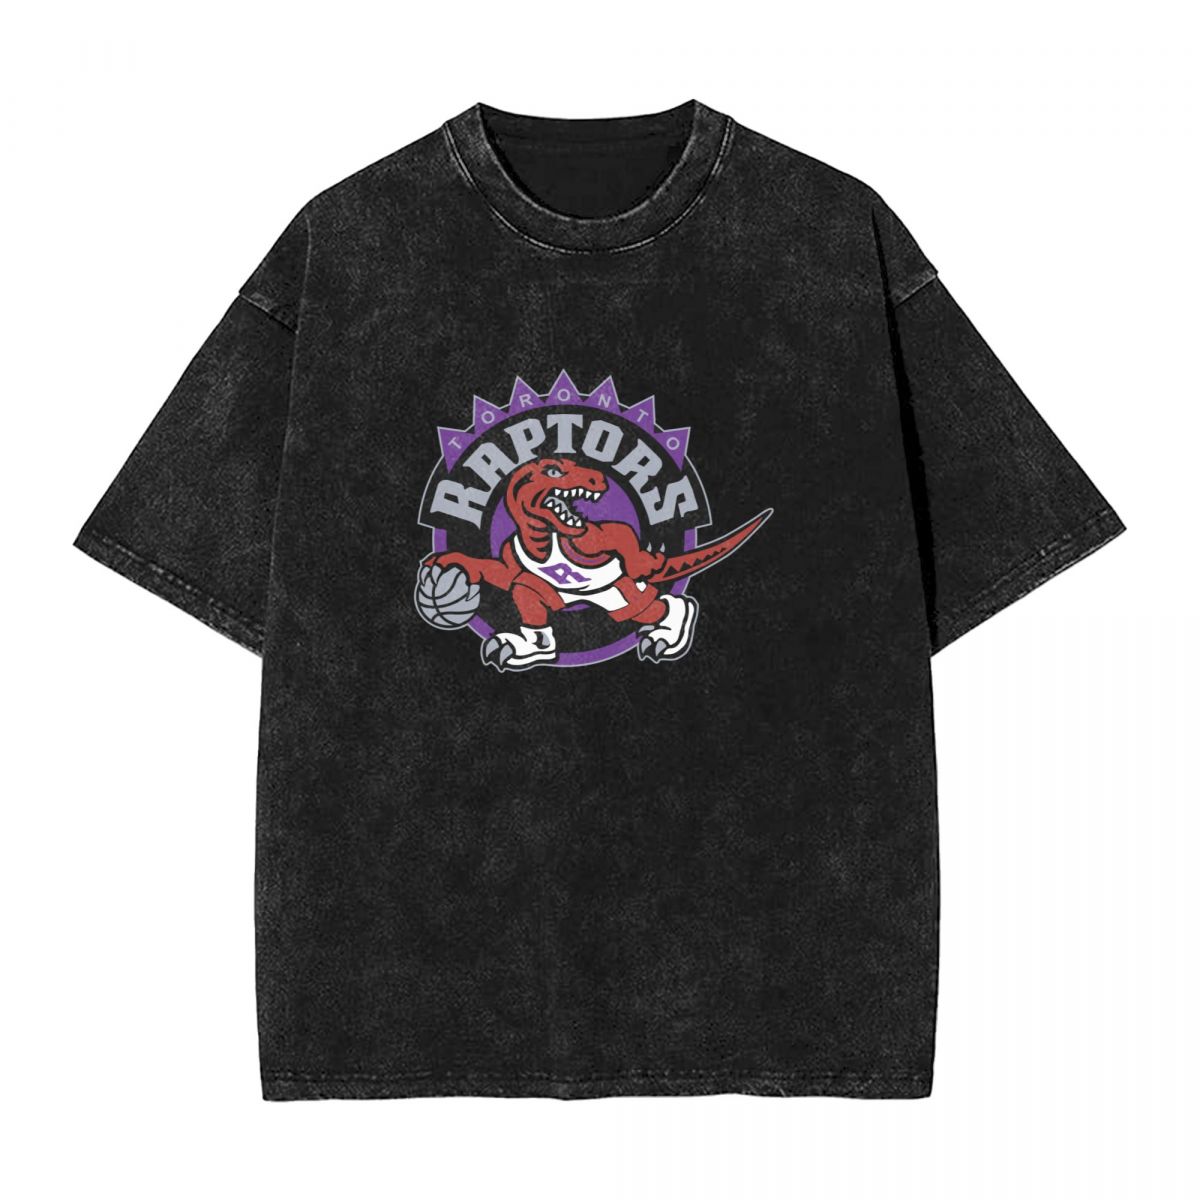 Toronto Raptors Basketball Team Washed Oversized Vintage Men's T-Shirt